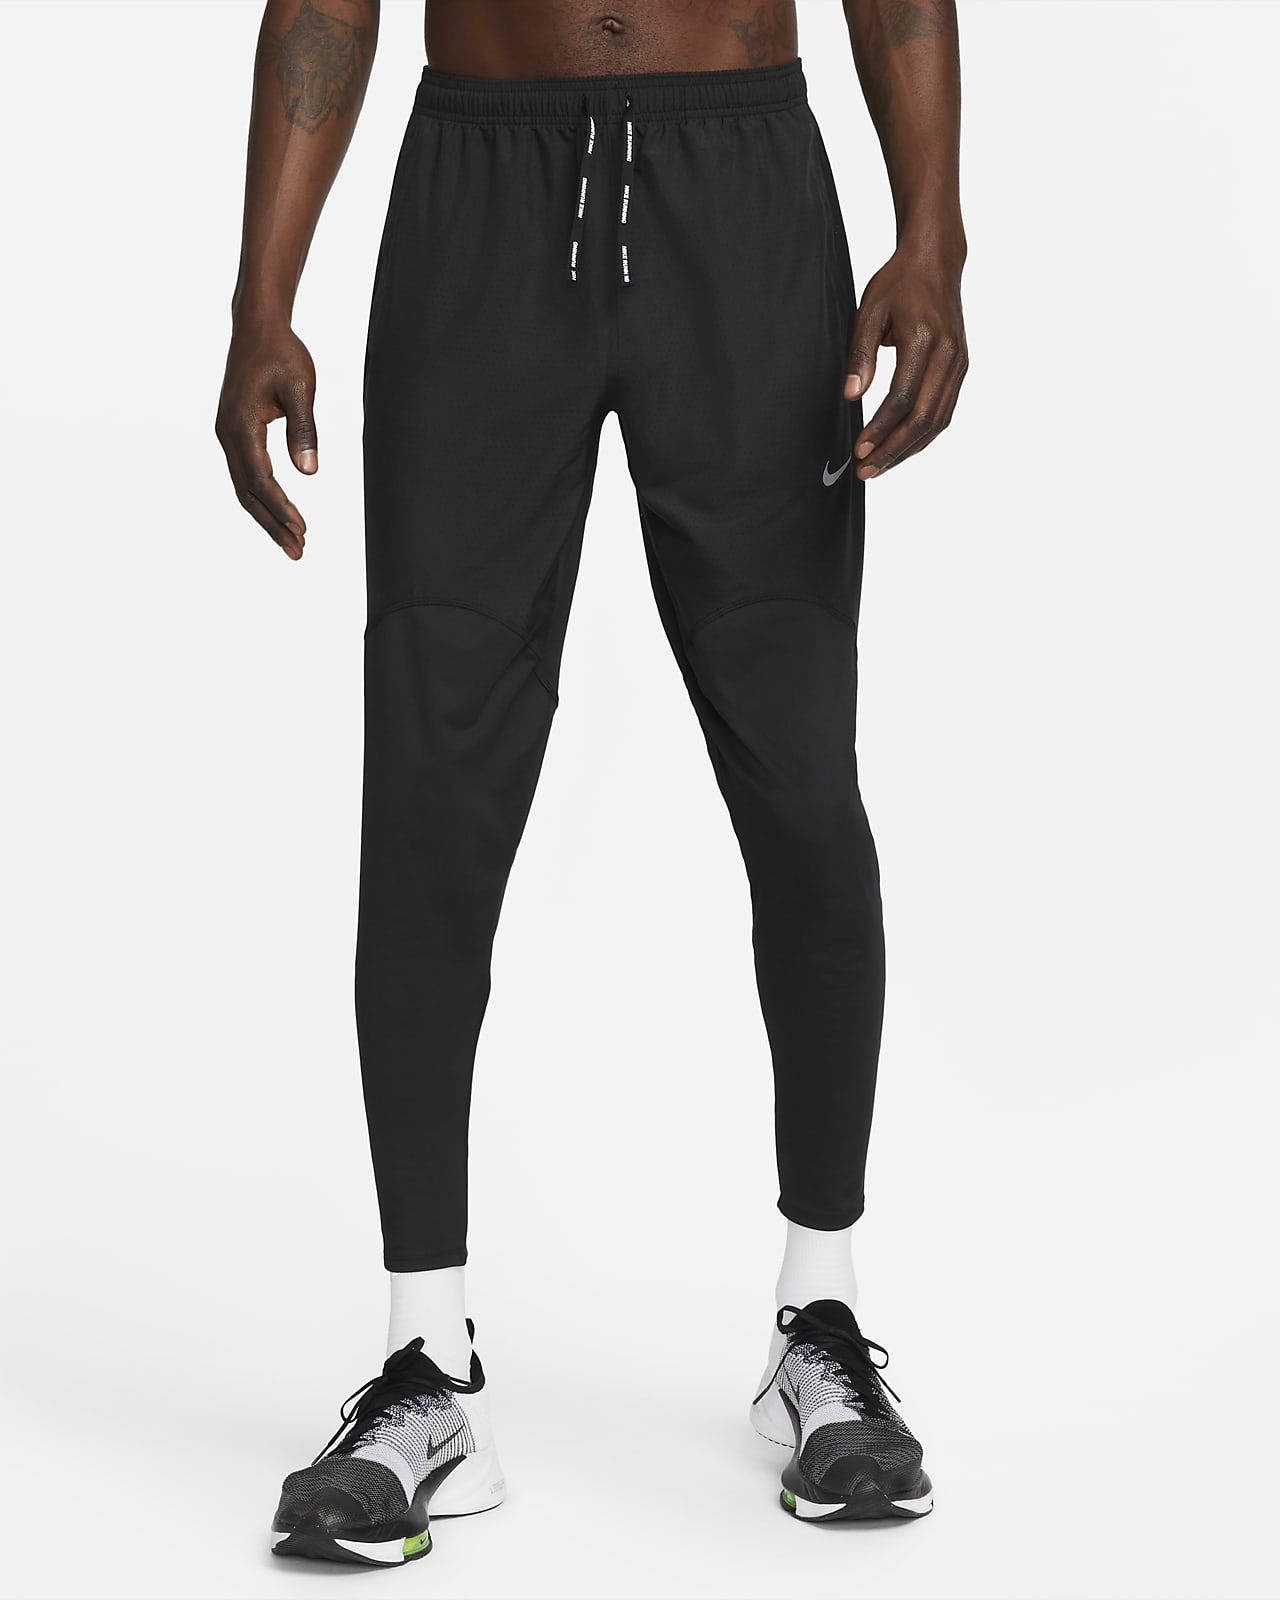 Nike Dri-FIT Men's Brief-Lined Racing Pants